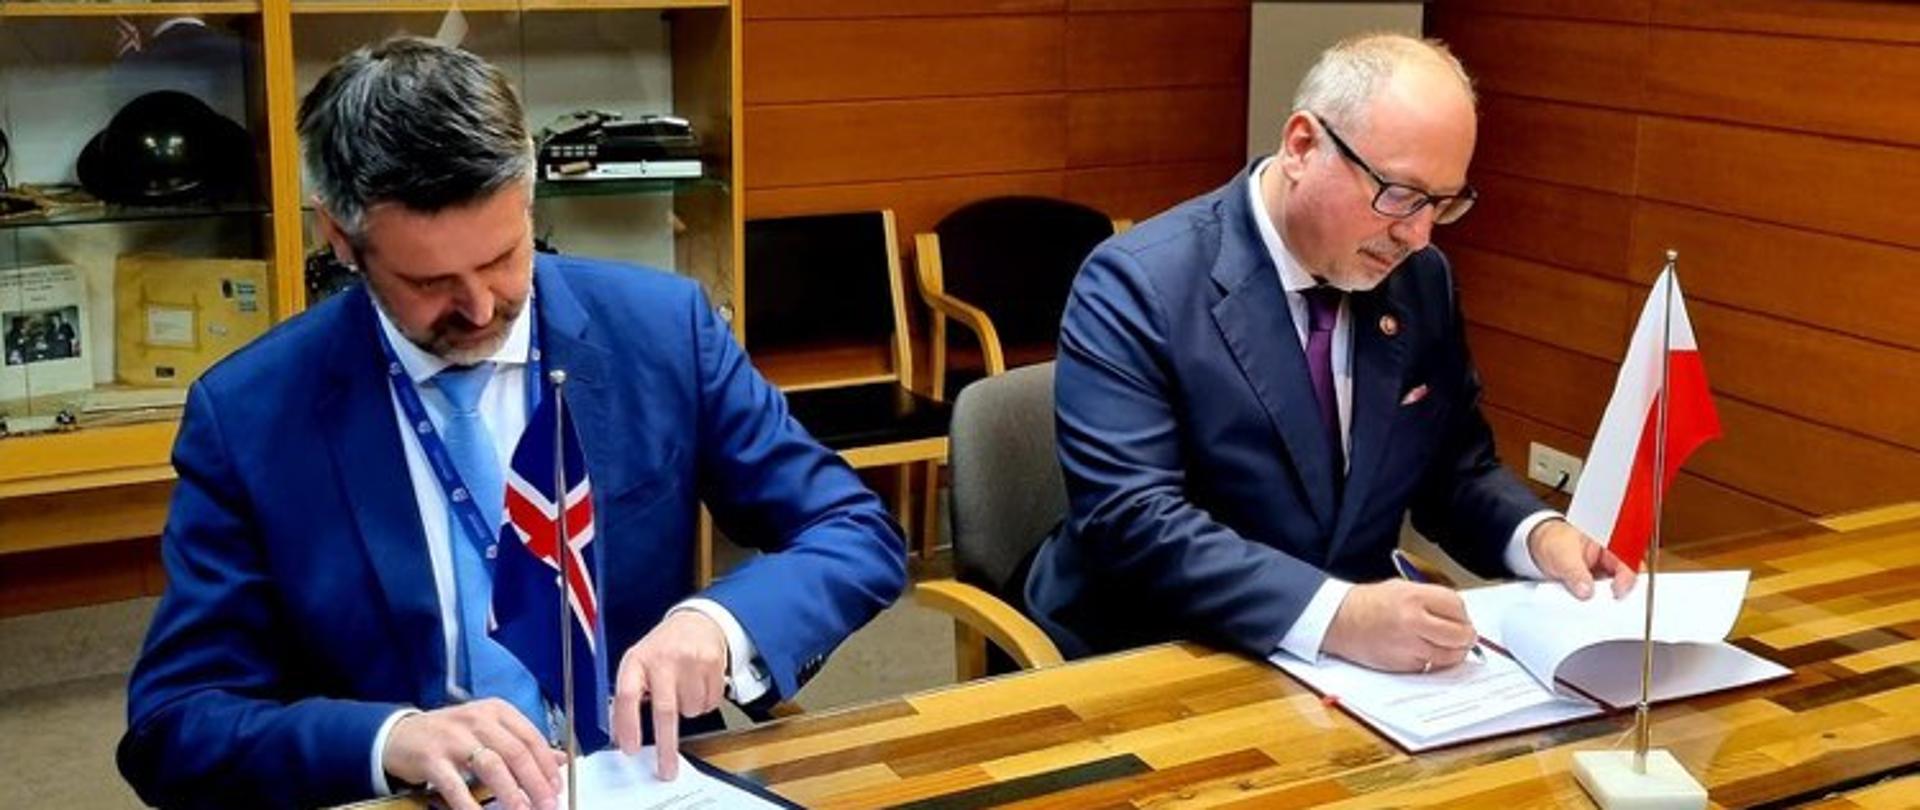 Podpisanie porozumienia o współpracy polskiej i islandzkiej służby zagranicznej w zakresie szkoleń